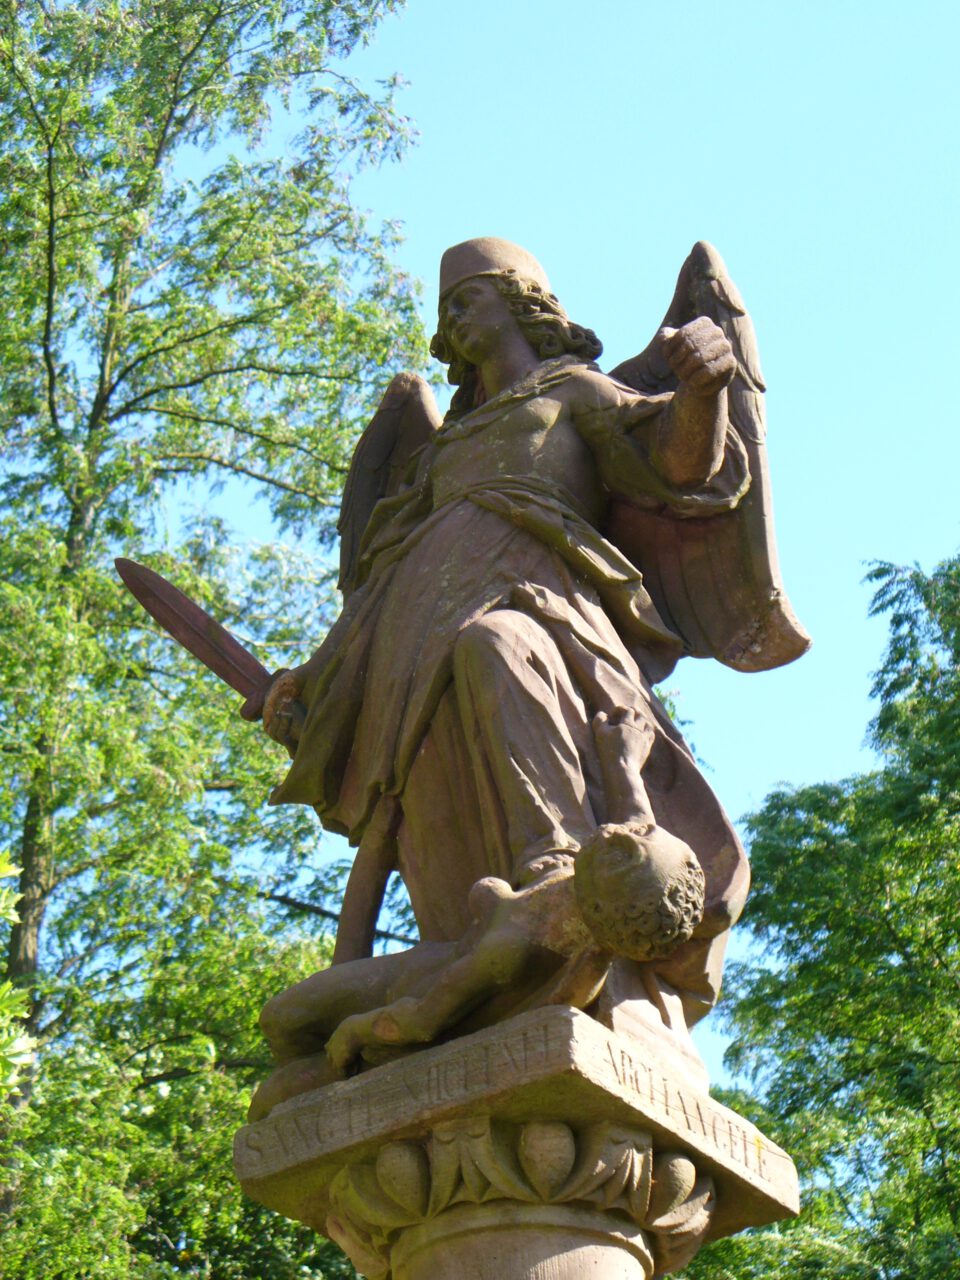 Michael - Kloster Engelberg Großheubach - Warum sich Engel nicht abschaffen lassen, beantwortet die Skulptur anschaulich: Weil sie sich wehren